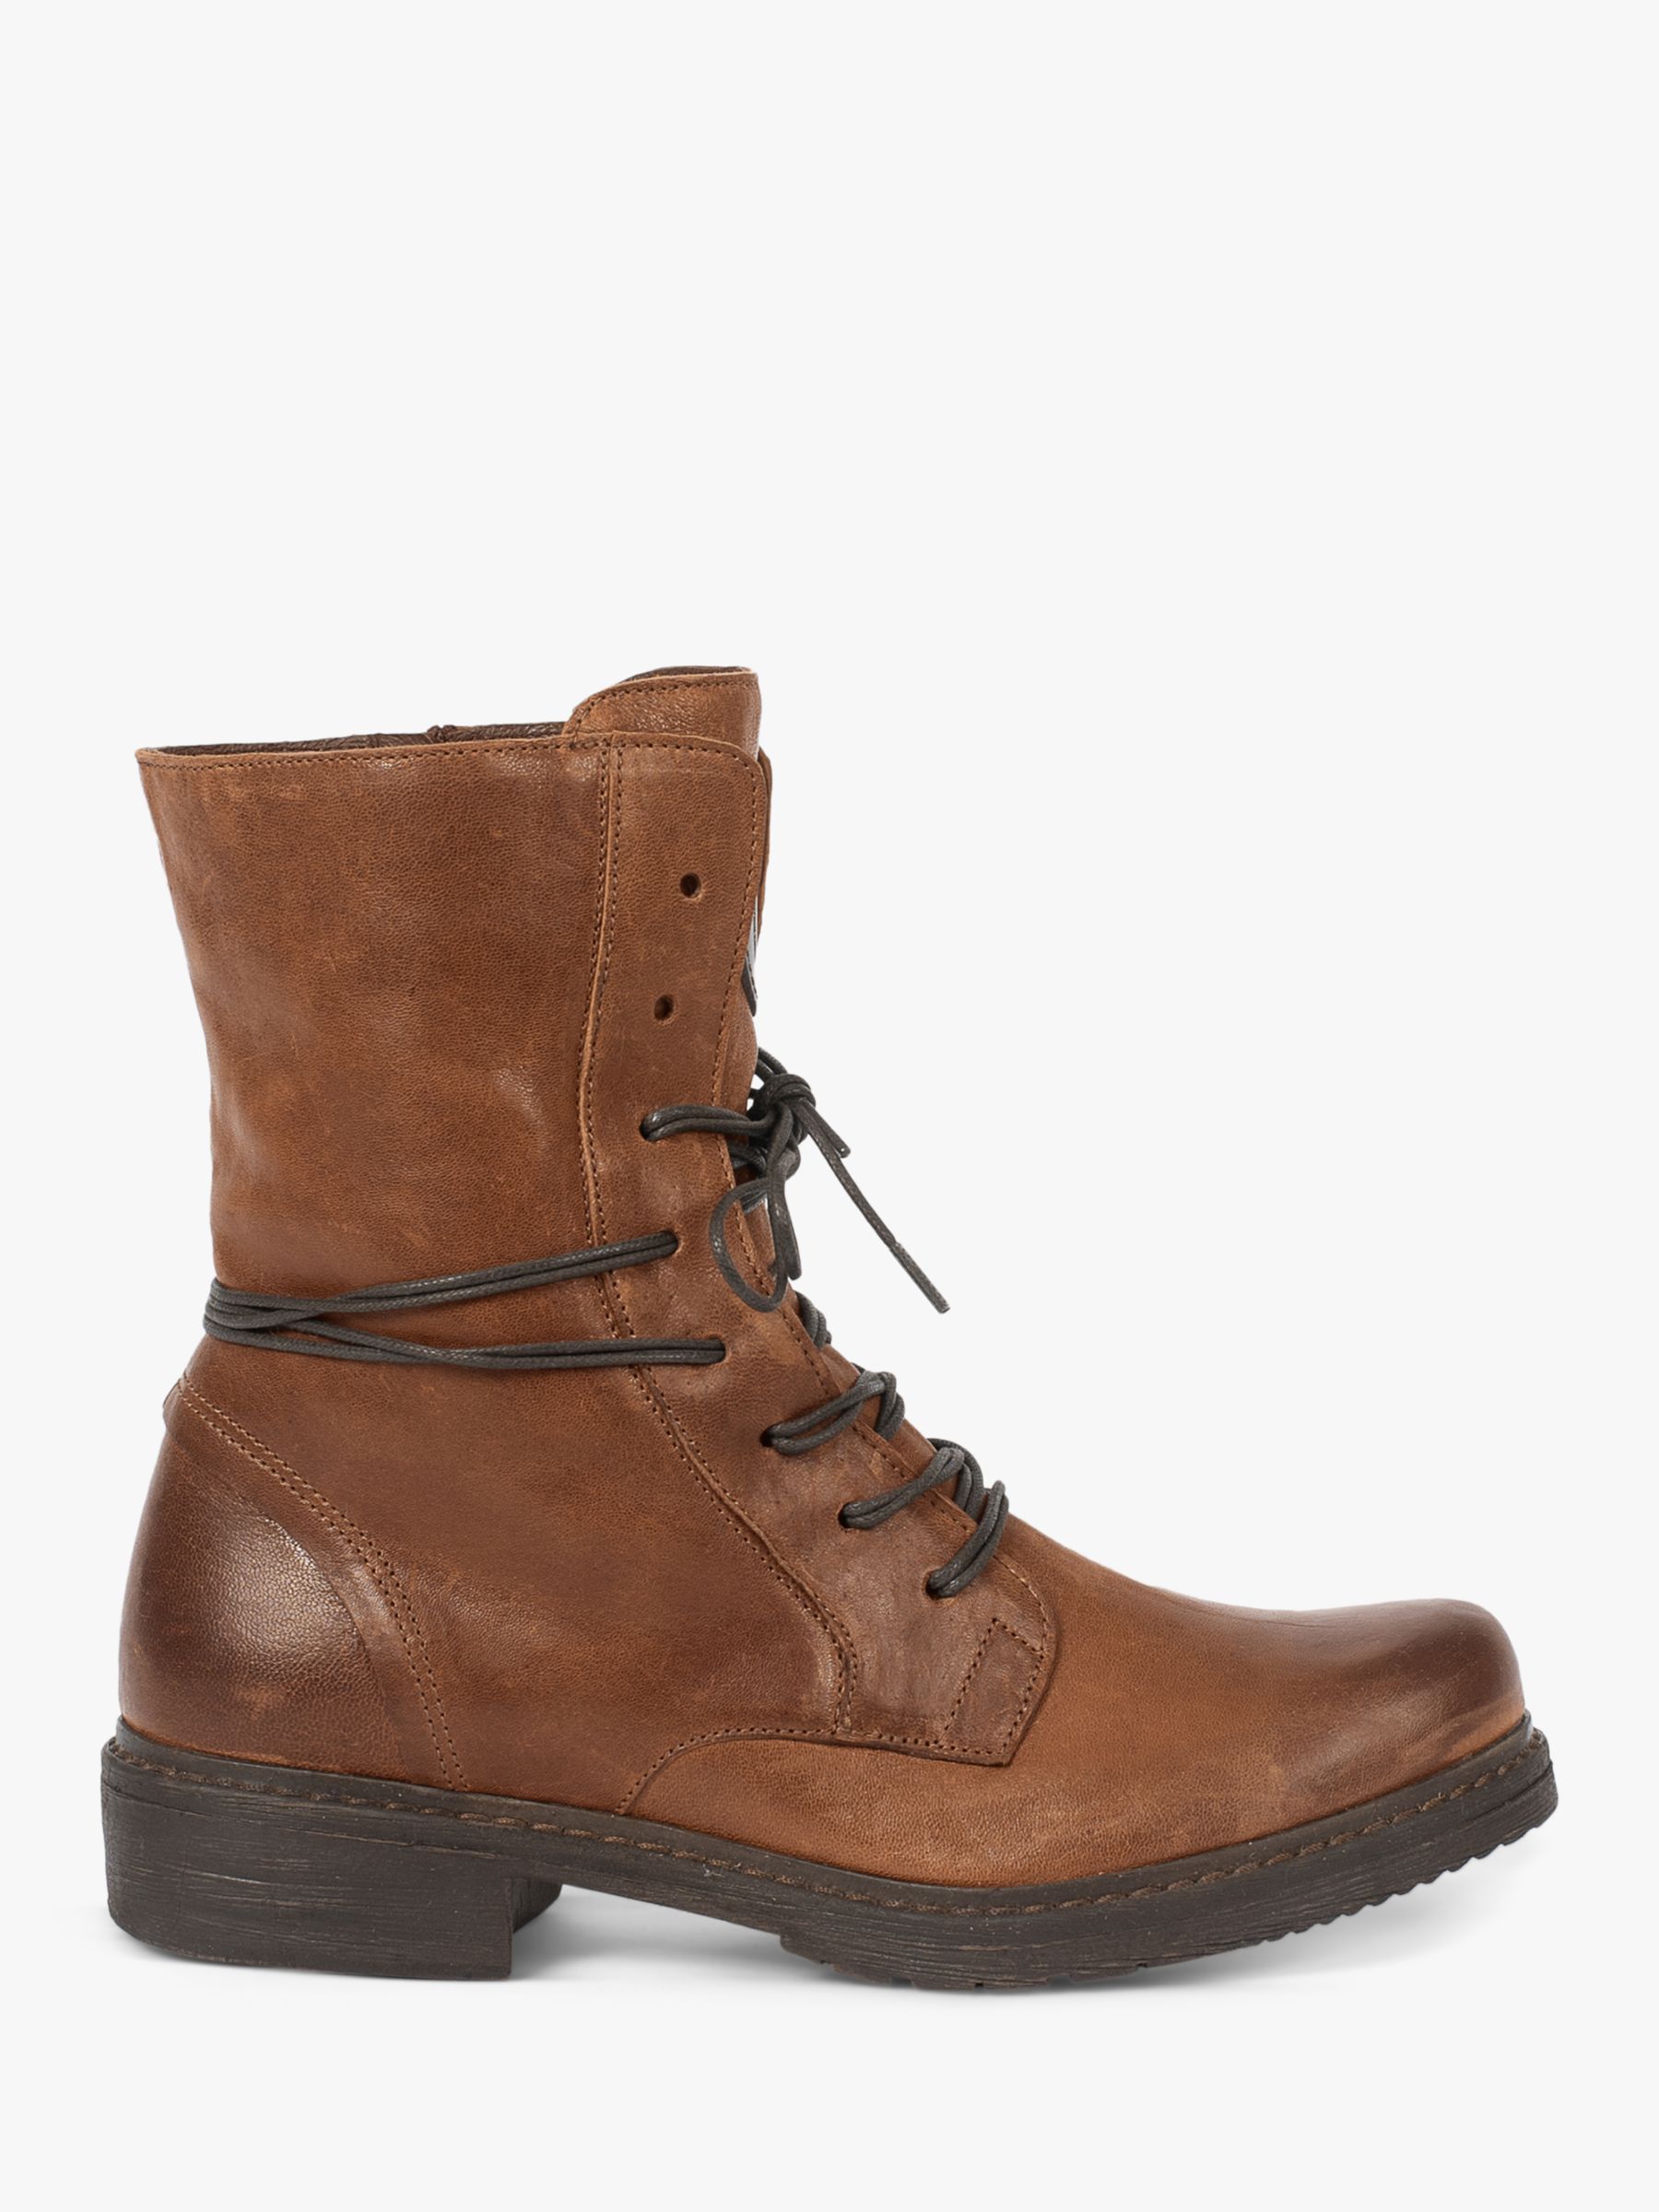 Кожаные ботинки дерби Celtic & Co., античный коричневый цвет кожаные ботинки дерби celtic